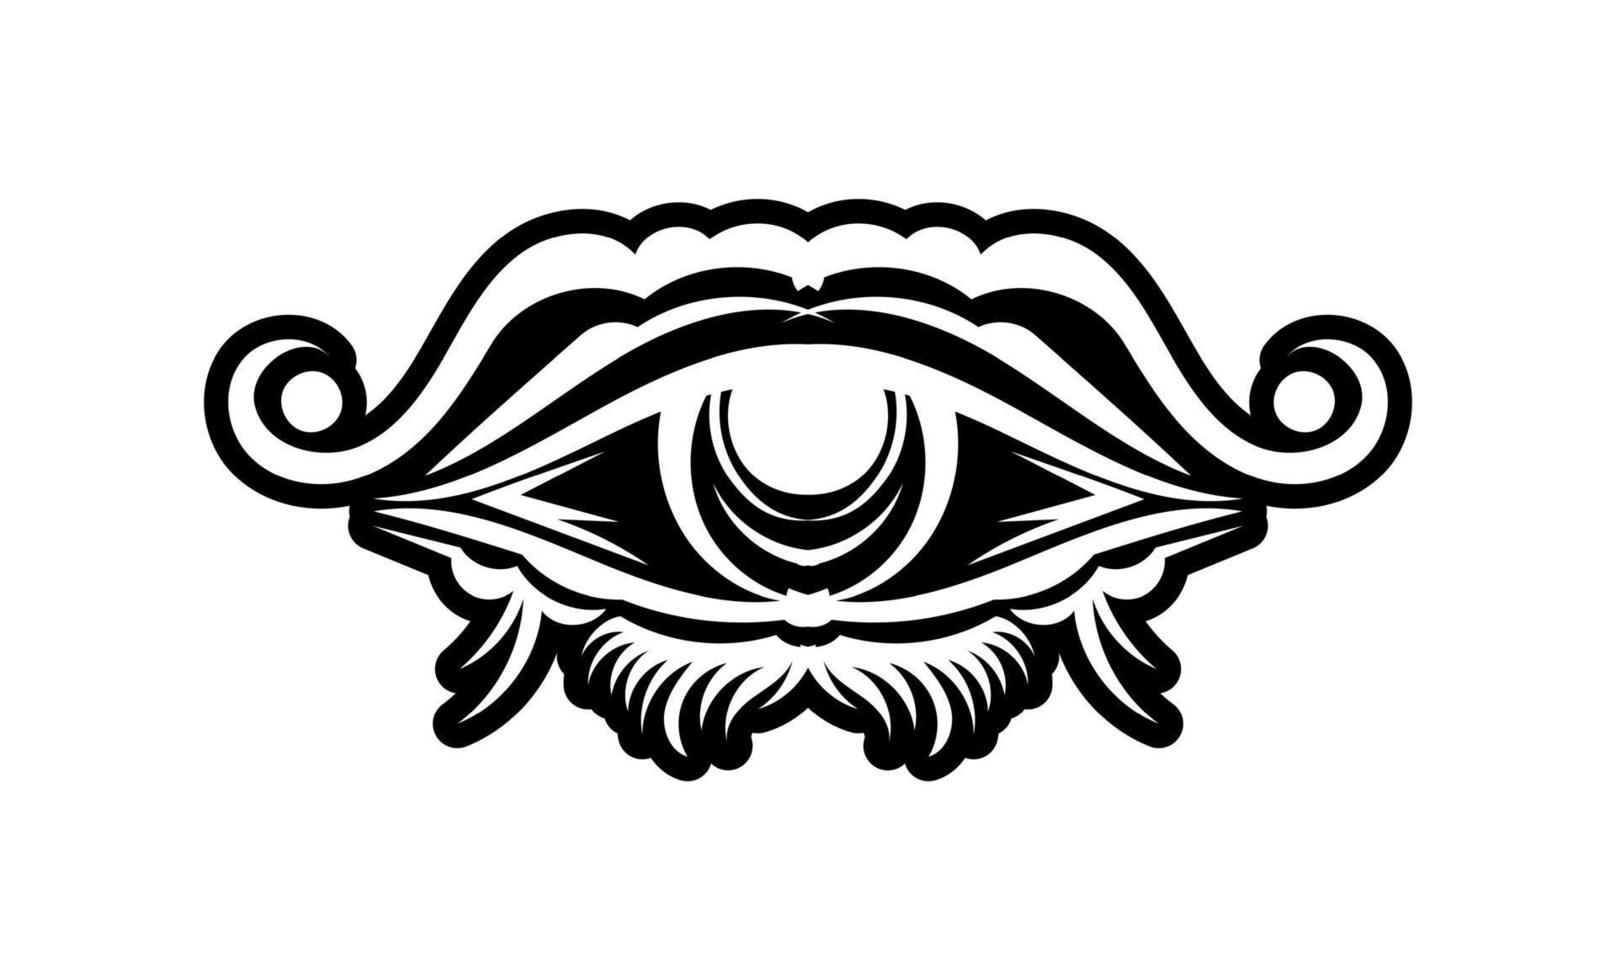 vintage tatuering med lysande allseende öga, mystisk symbol, boho design. handritning isolerad på vit bakgrund, helig geometri, framsynthet och magi. vektor illustration